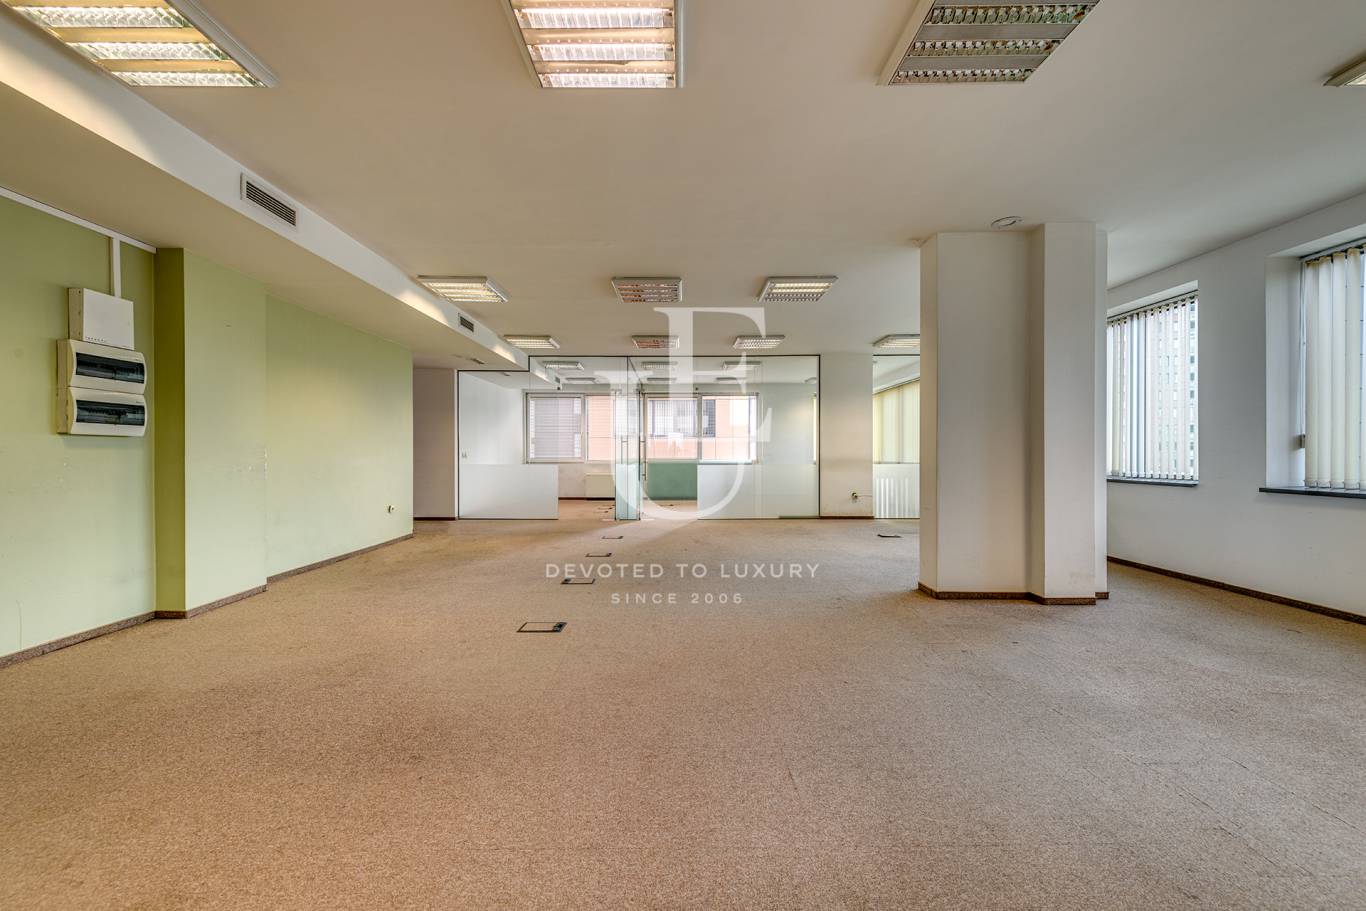 Офис под наем в София, бул. България - код на имота: K17986 - image 4